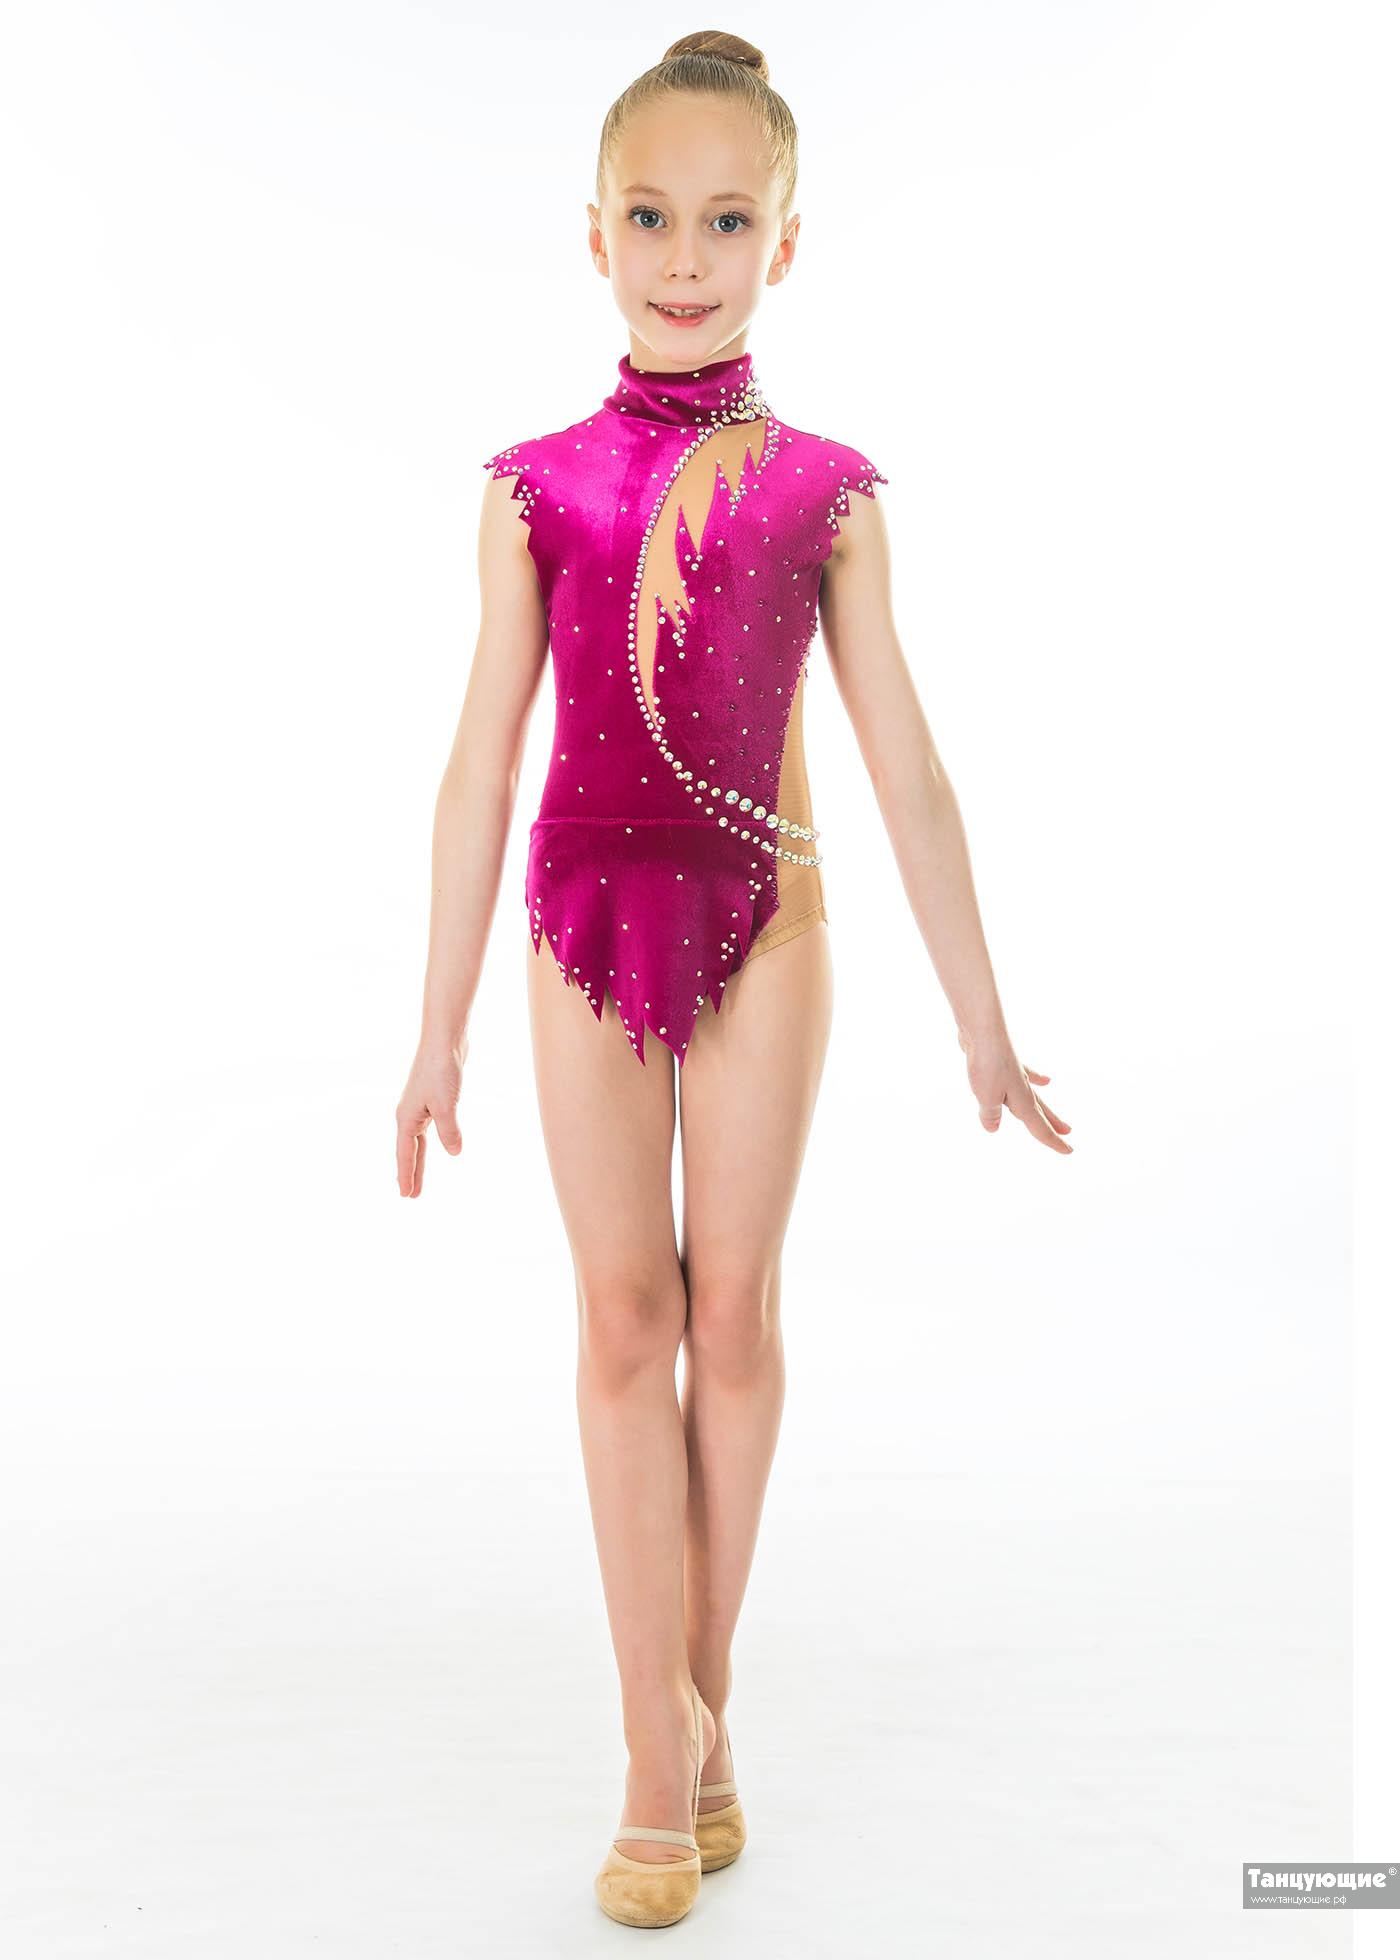 Купальник для художественной гимнастики Бархатный цветок — купить в  интернет-магазине «Танцующие»